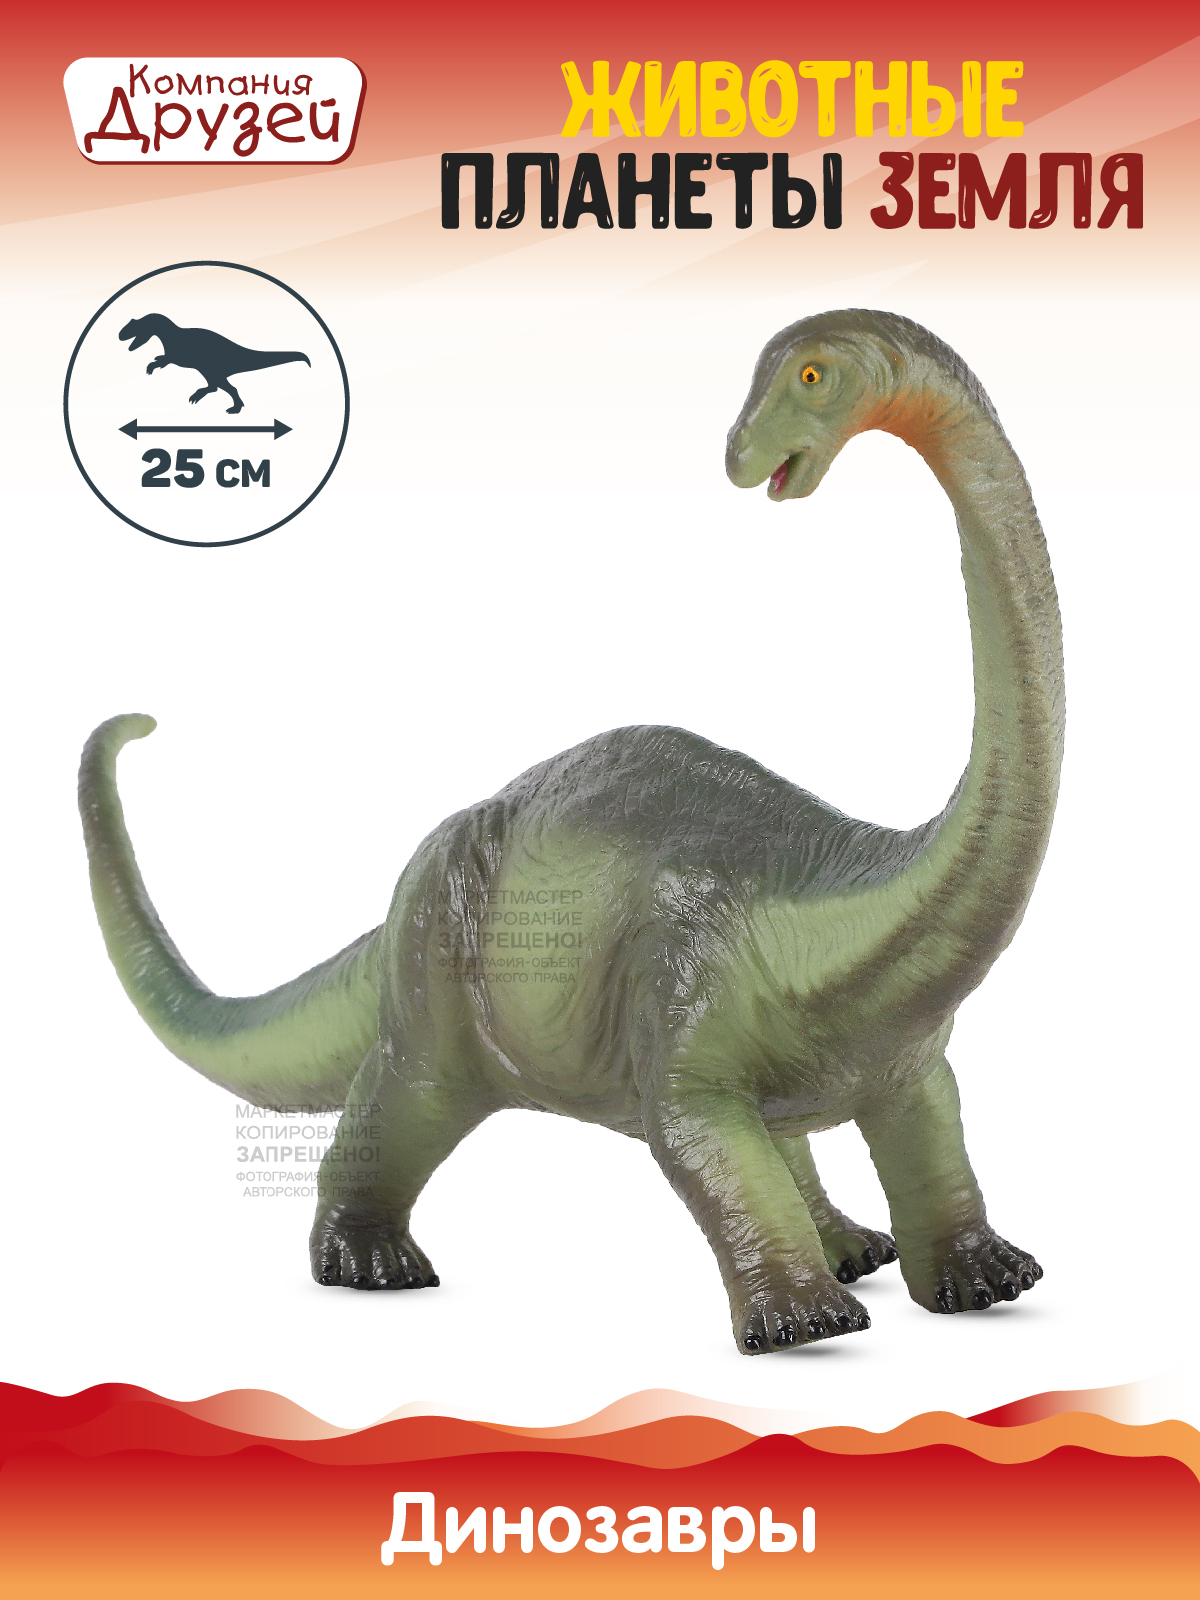 Фигурка Динозавр из серии Животные планеты Земля Компания друзей зеленый JB0208314 динозавр с чипом компания друзей животные планеты земля звук рёв животного jb0207082